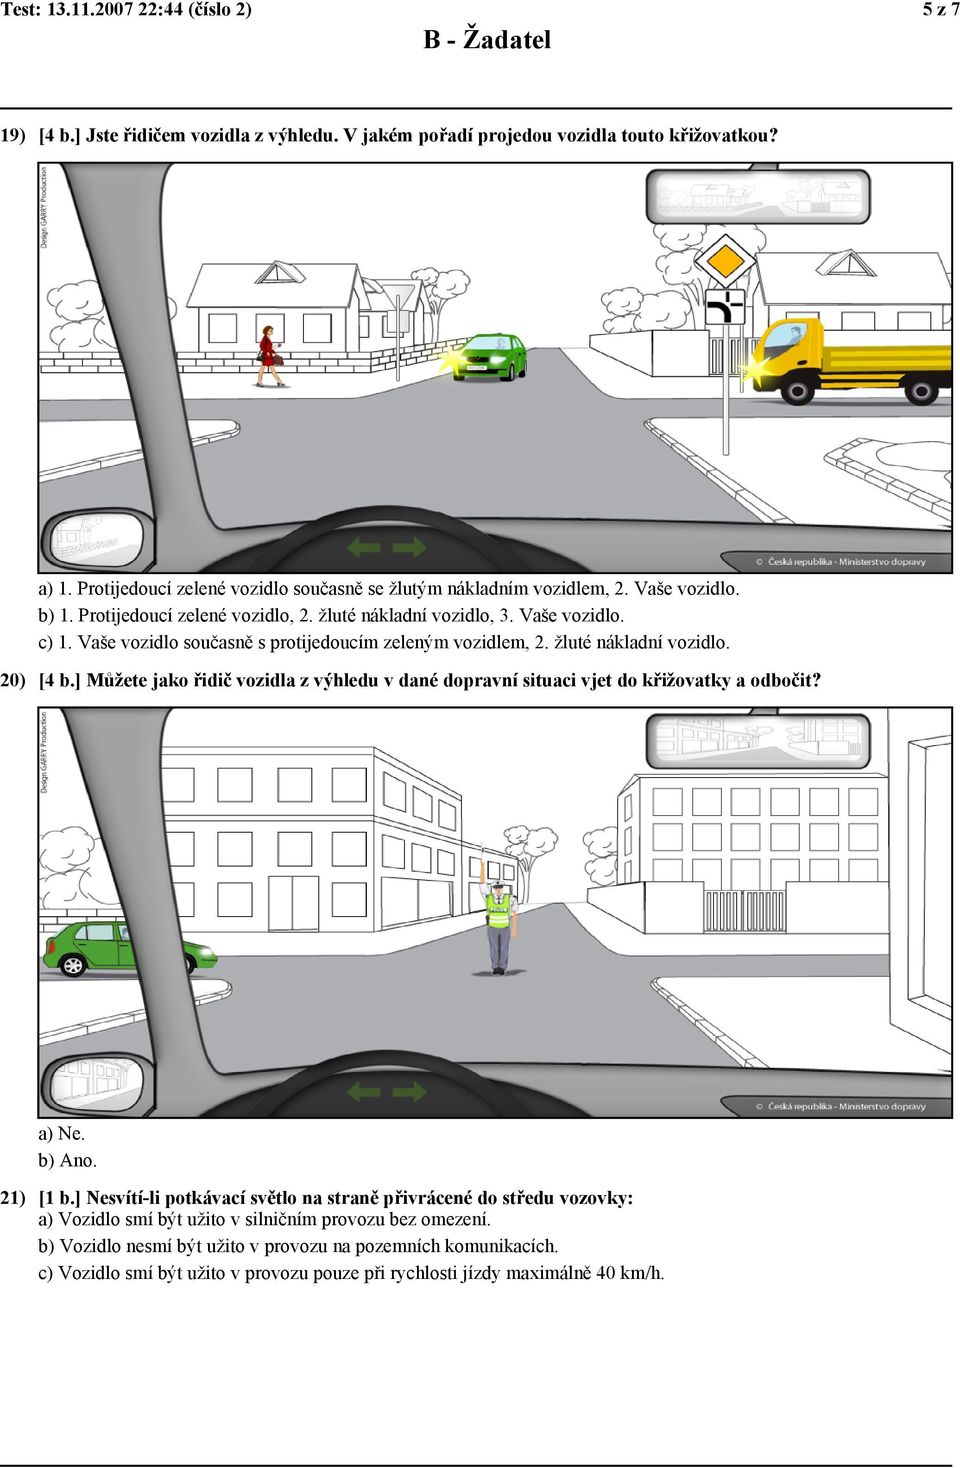 Vaše vozidlo současně s protijedoucím zeleným vozidlem, 2. žluté nákladní vozidlo. 20) [4 b.] Můžete jako řidič vozidla z výhledu v dané dopravní situaci vjet do křižovatky a odbočit? a) Ne.